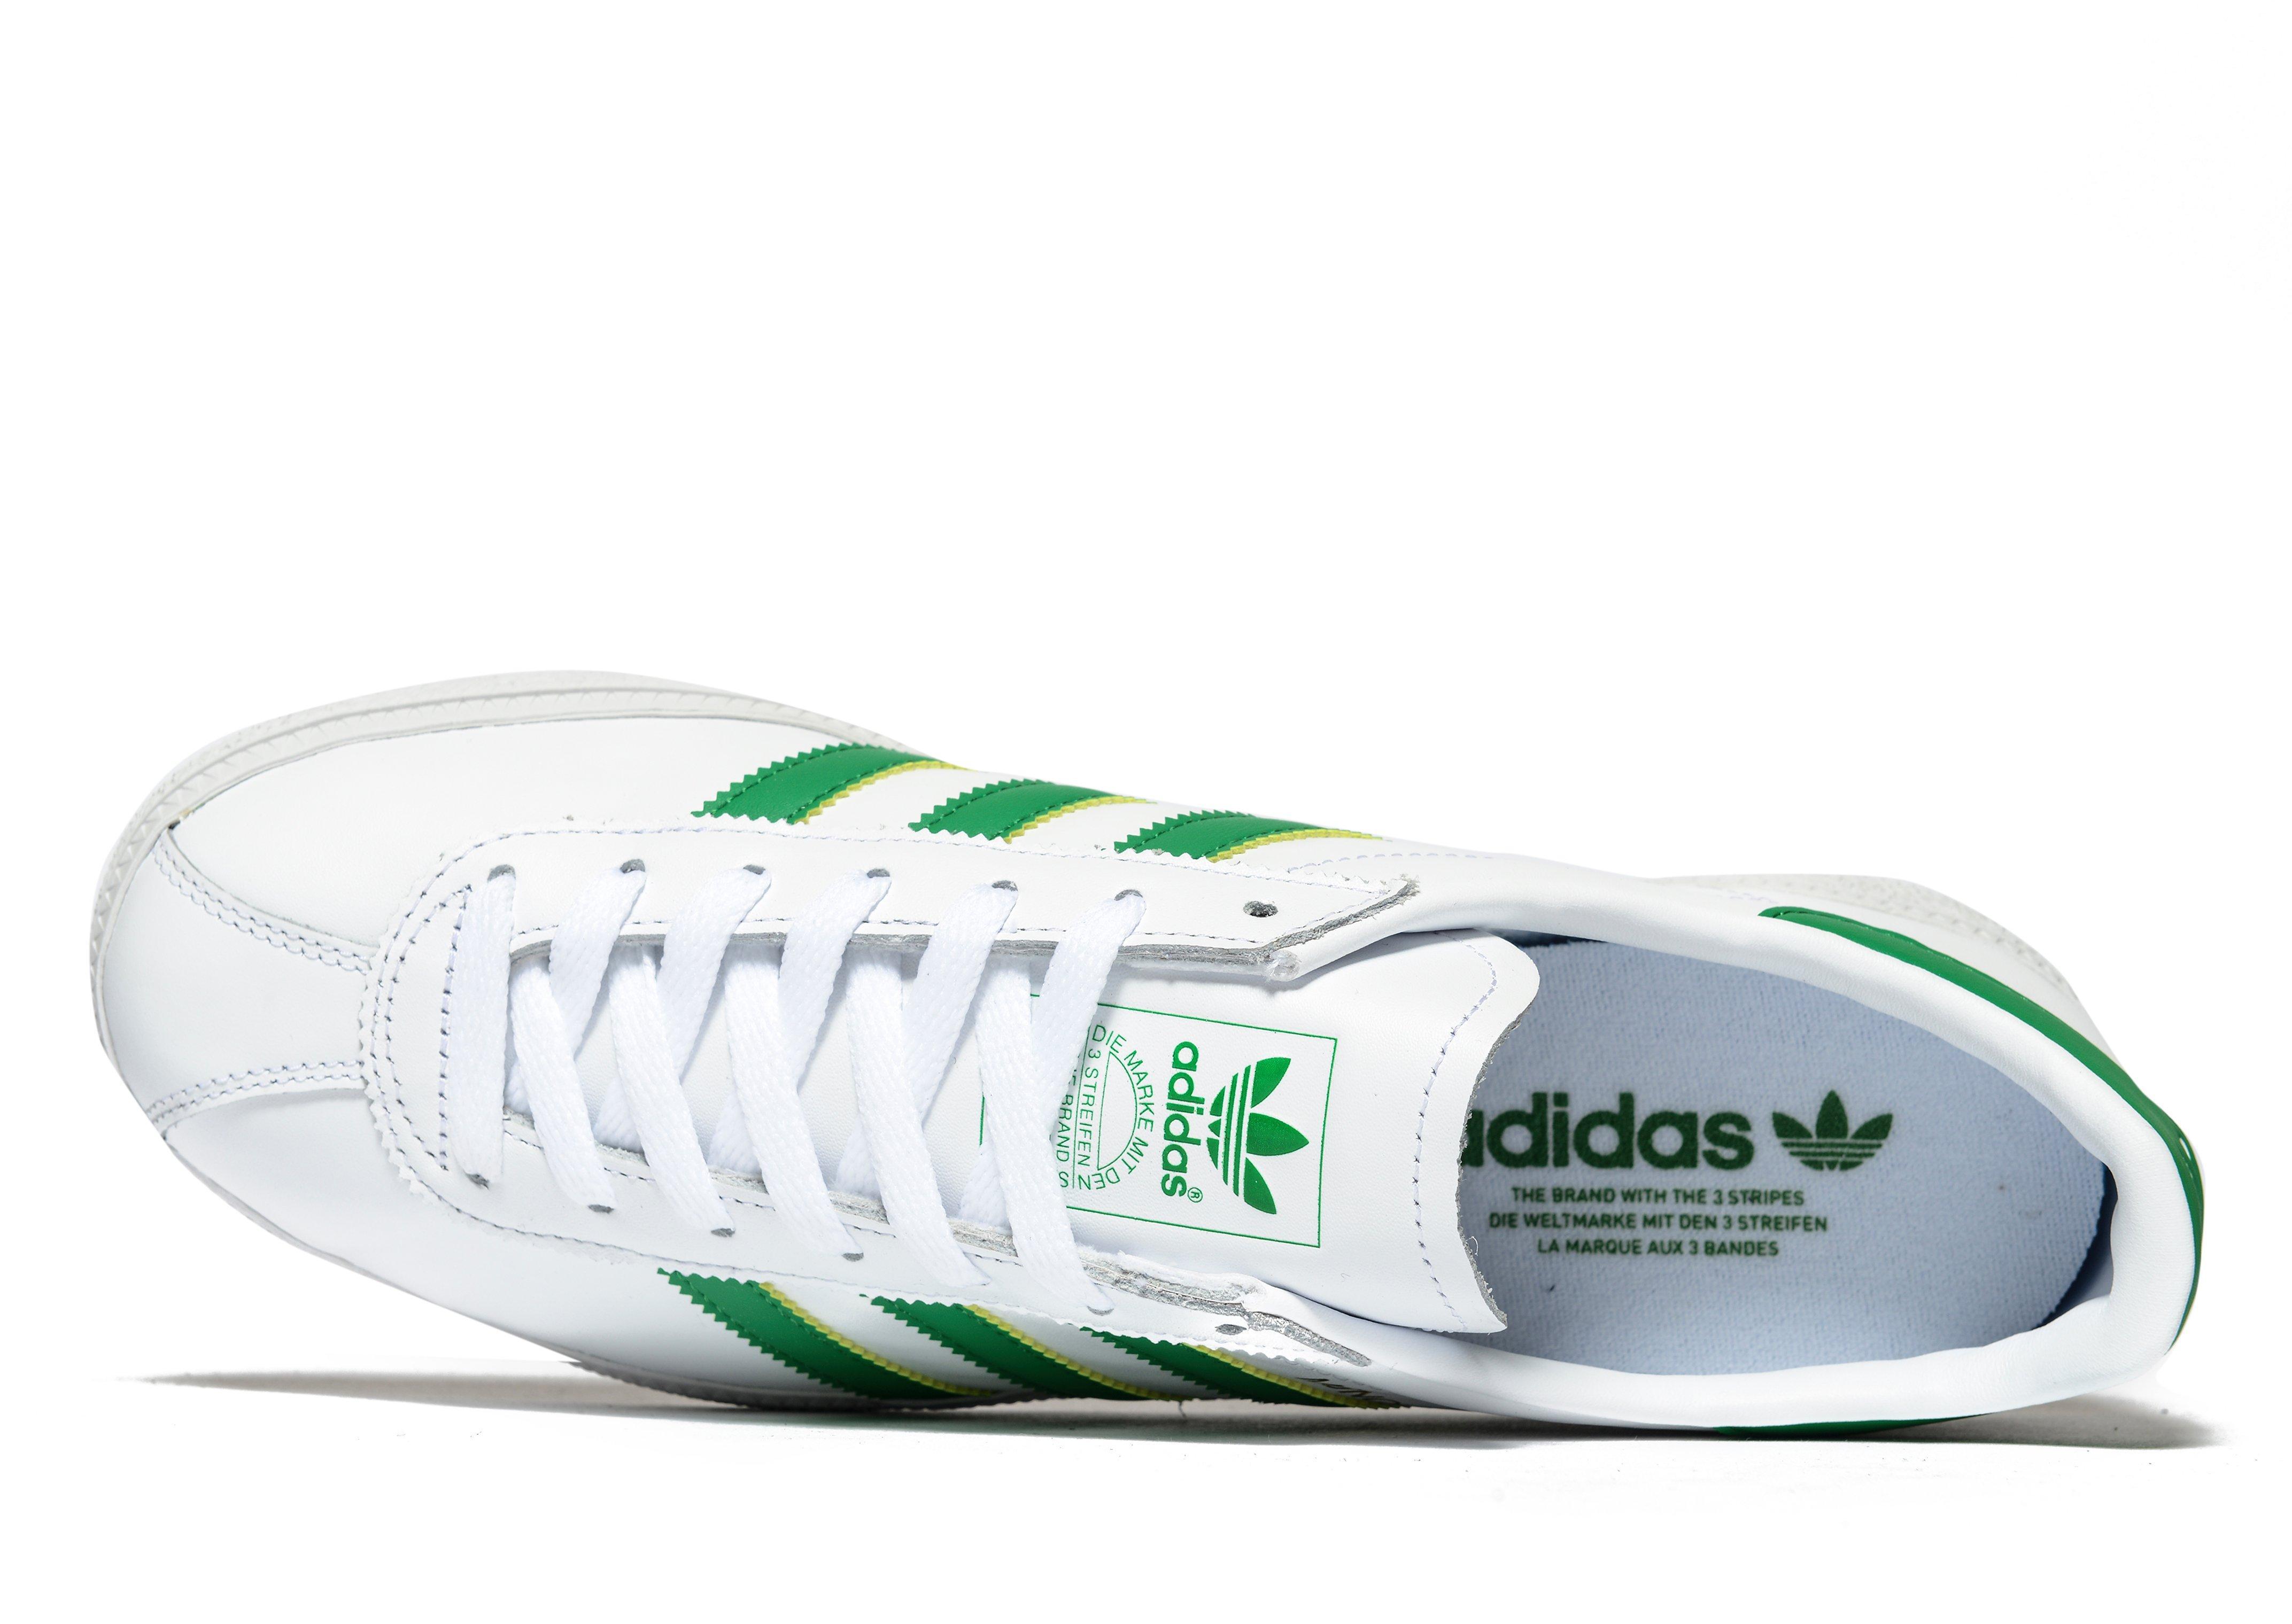 adidas white green stripes